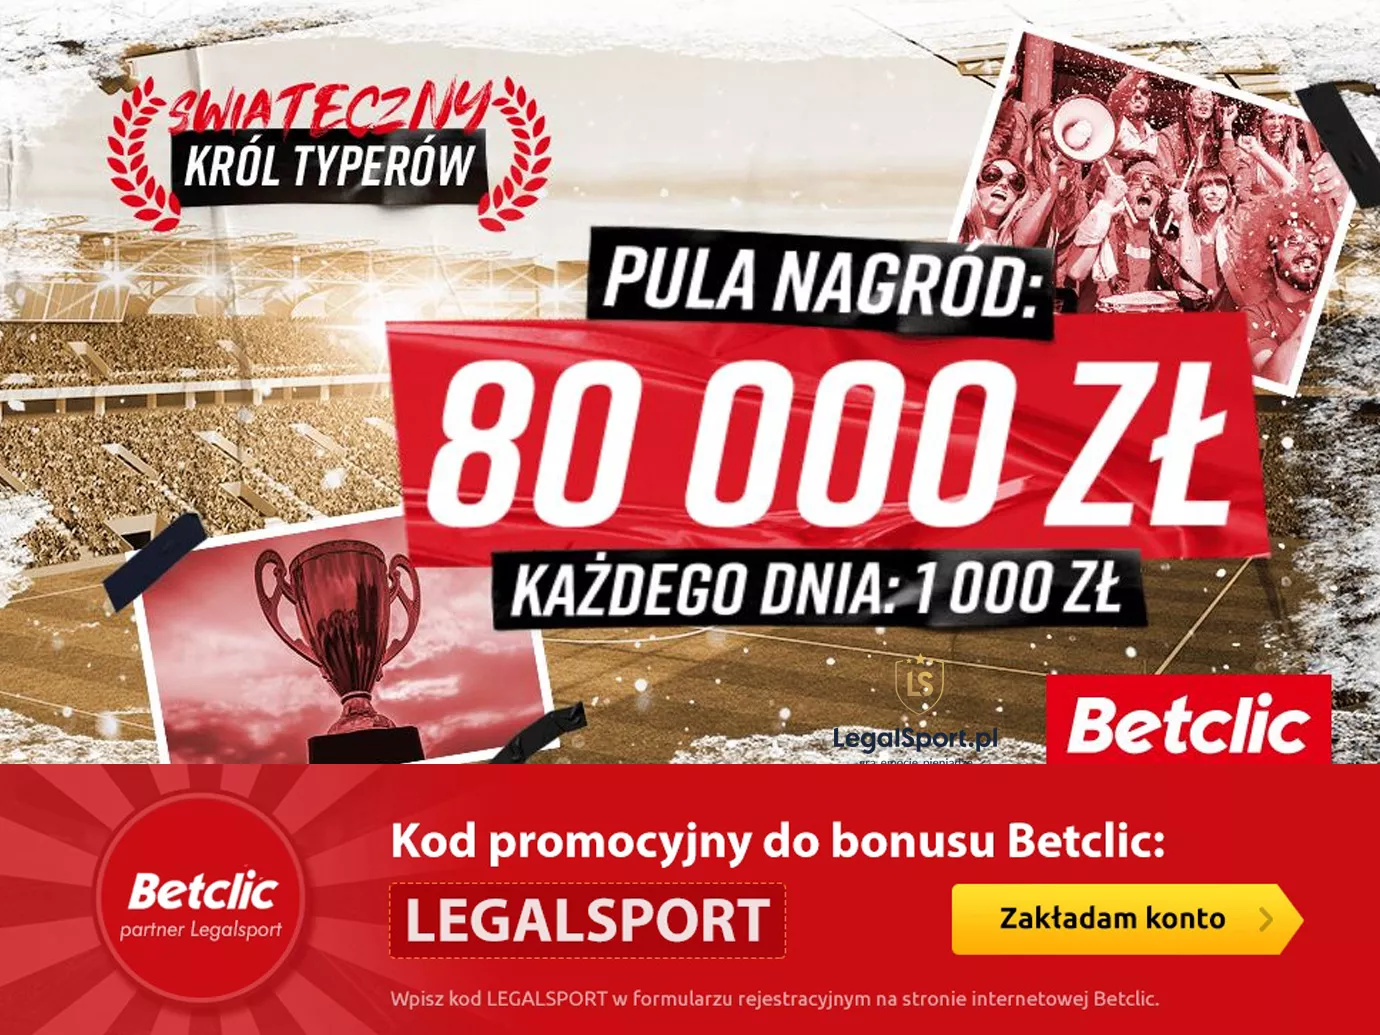 Betclic Król Typerów - ranking z nagrodami o wartości 80 000 zł